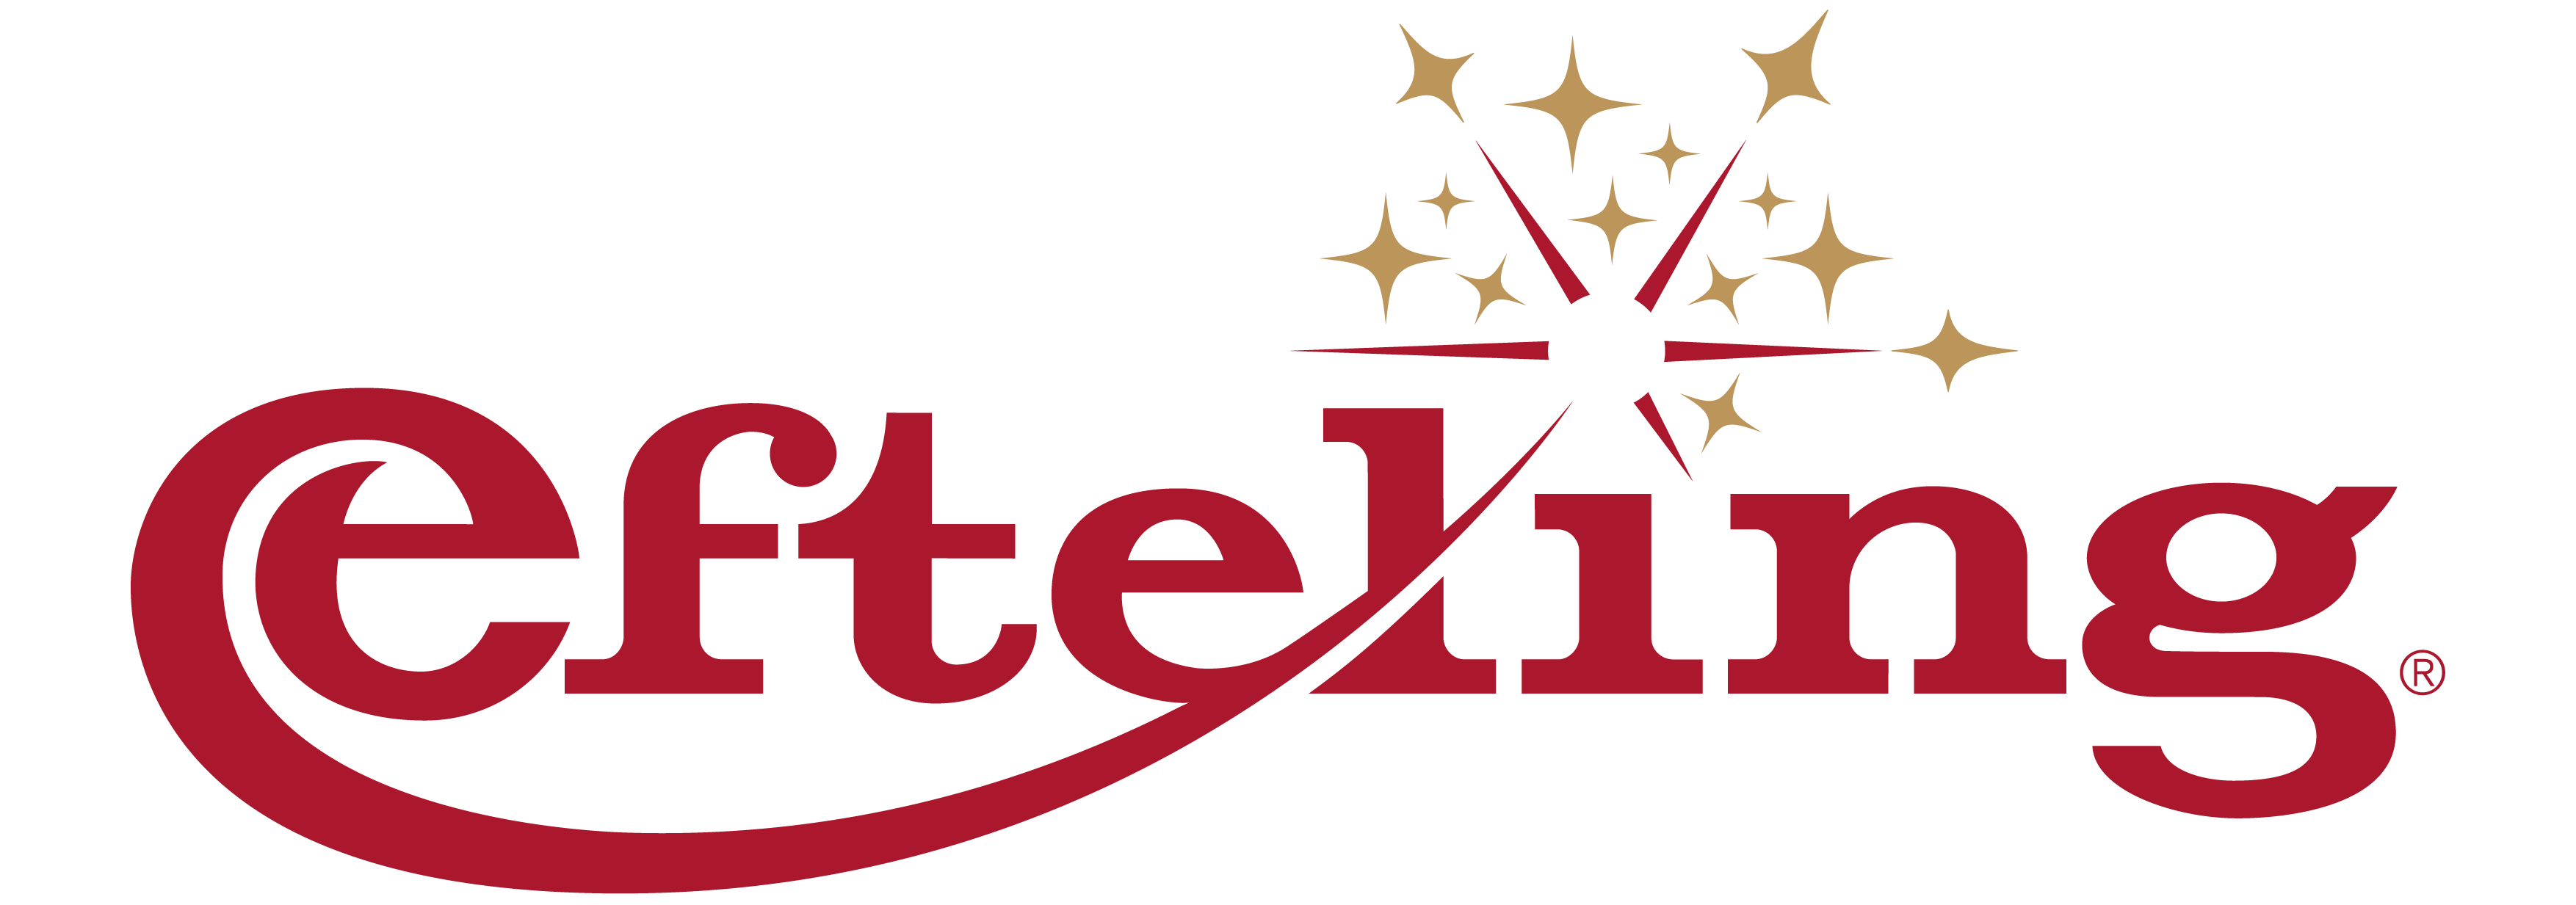 Efteling logo